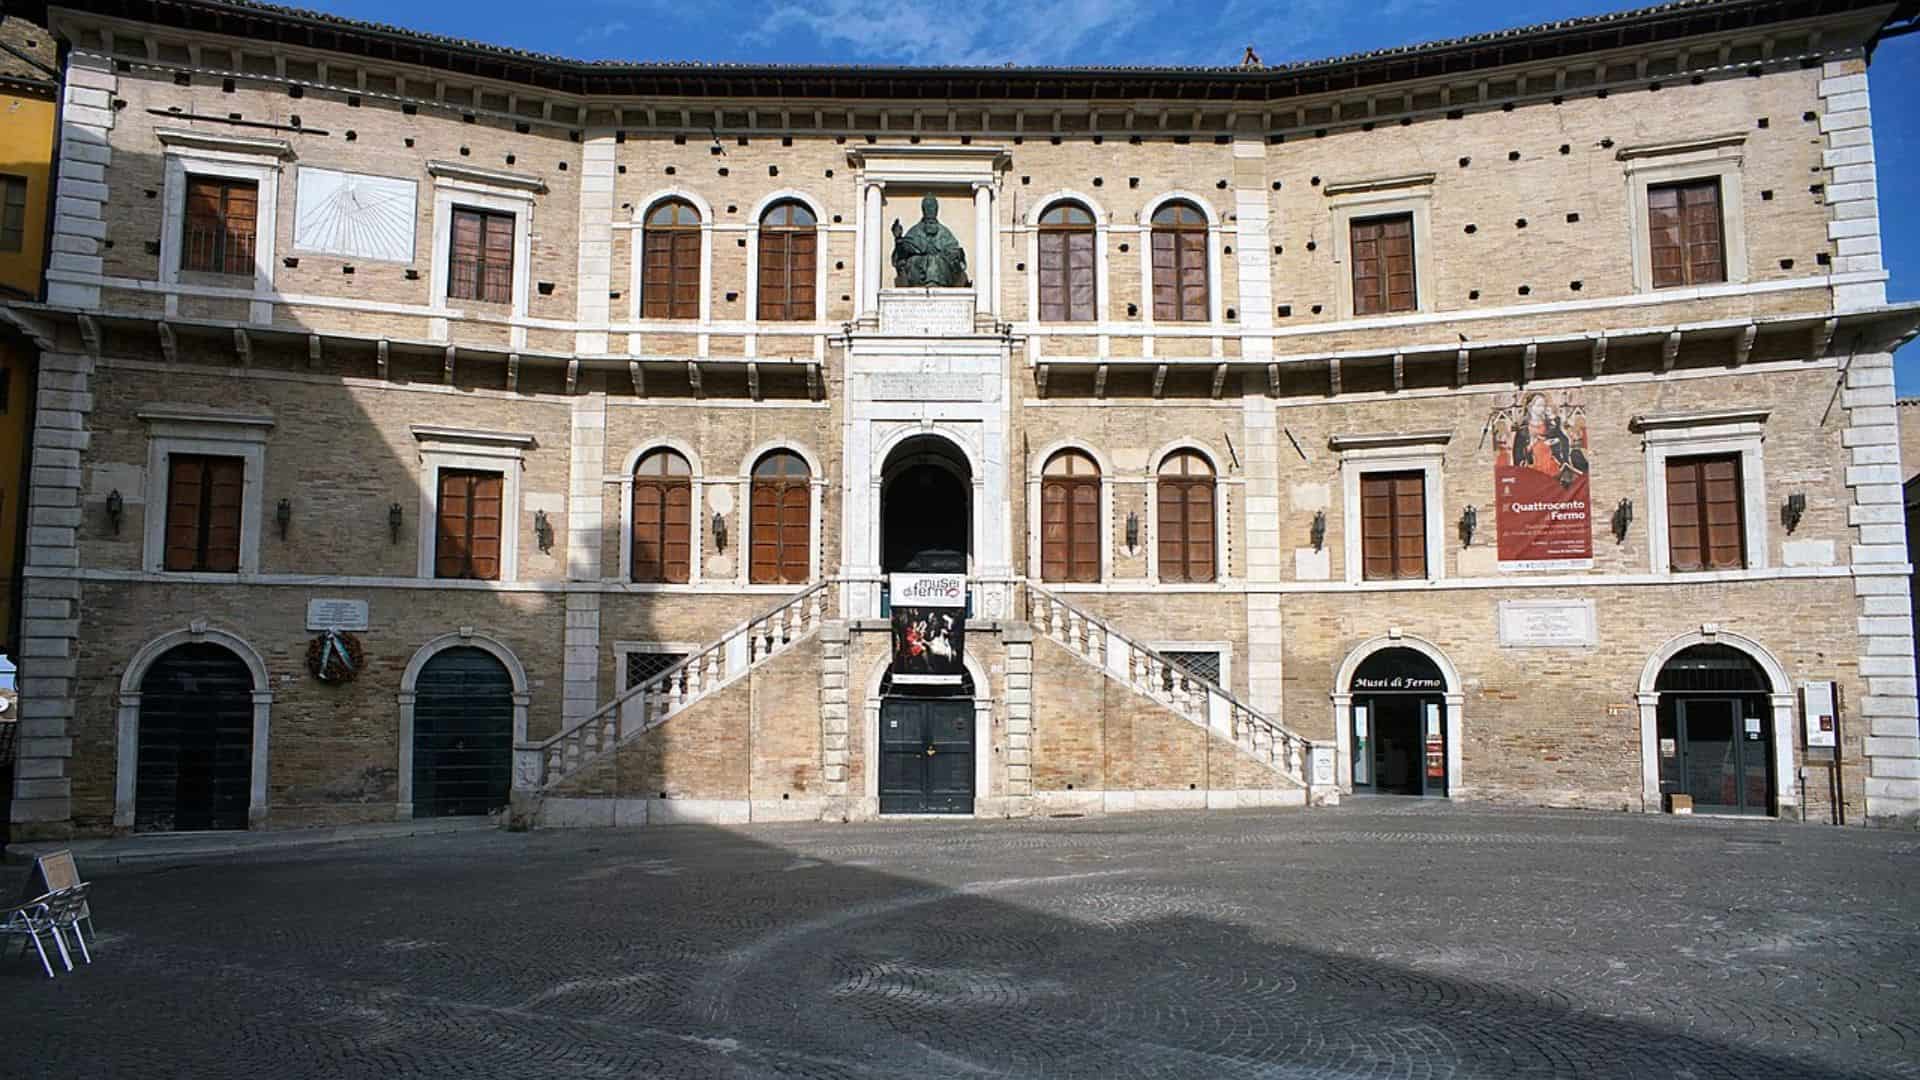 Palazzo priori in Fermo (bildquelle: padercol)